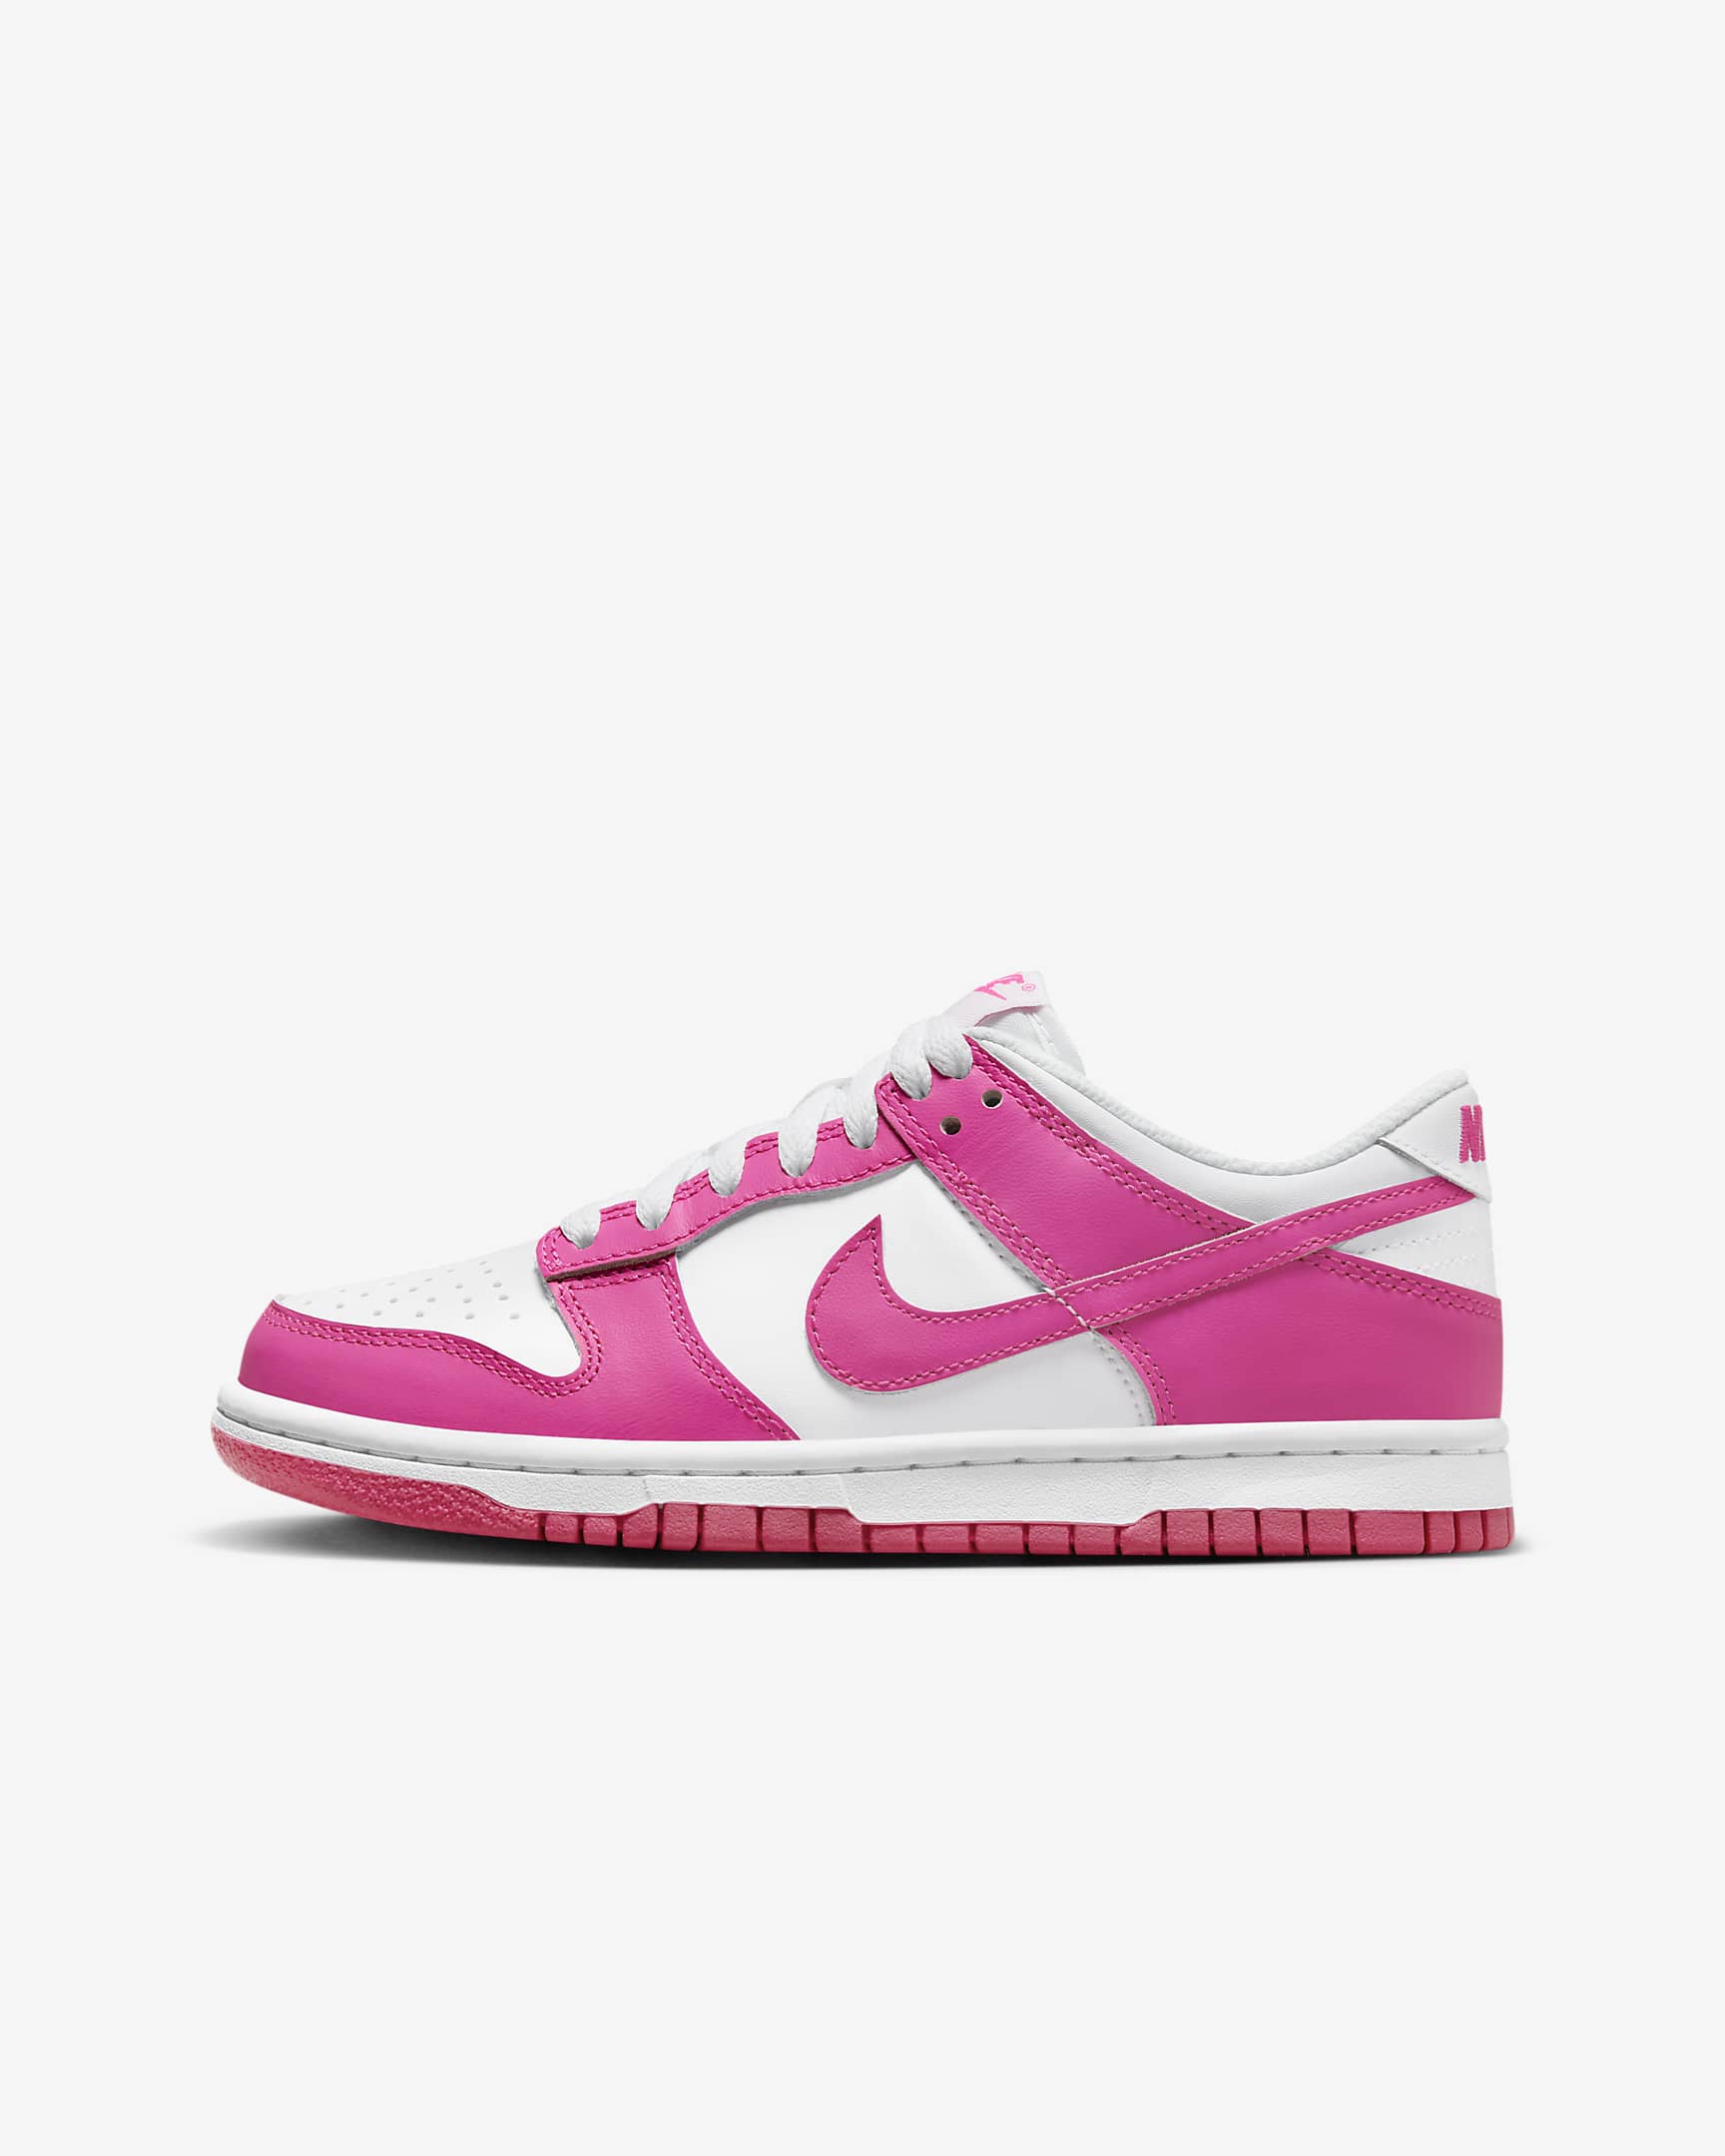 Nike Dunk Low Schuh für ältere Kinder - Weiß/Pink/Laser Fuchsia